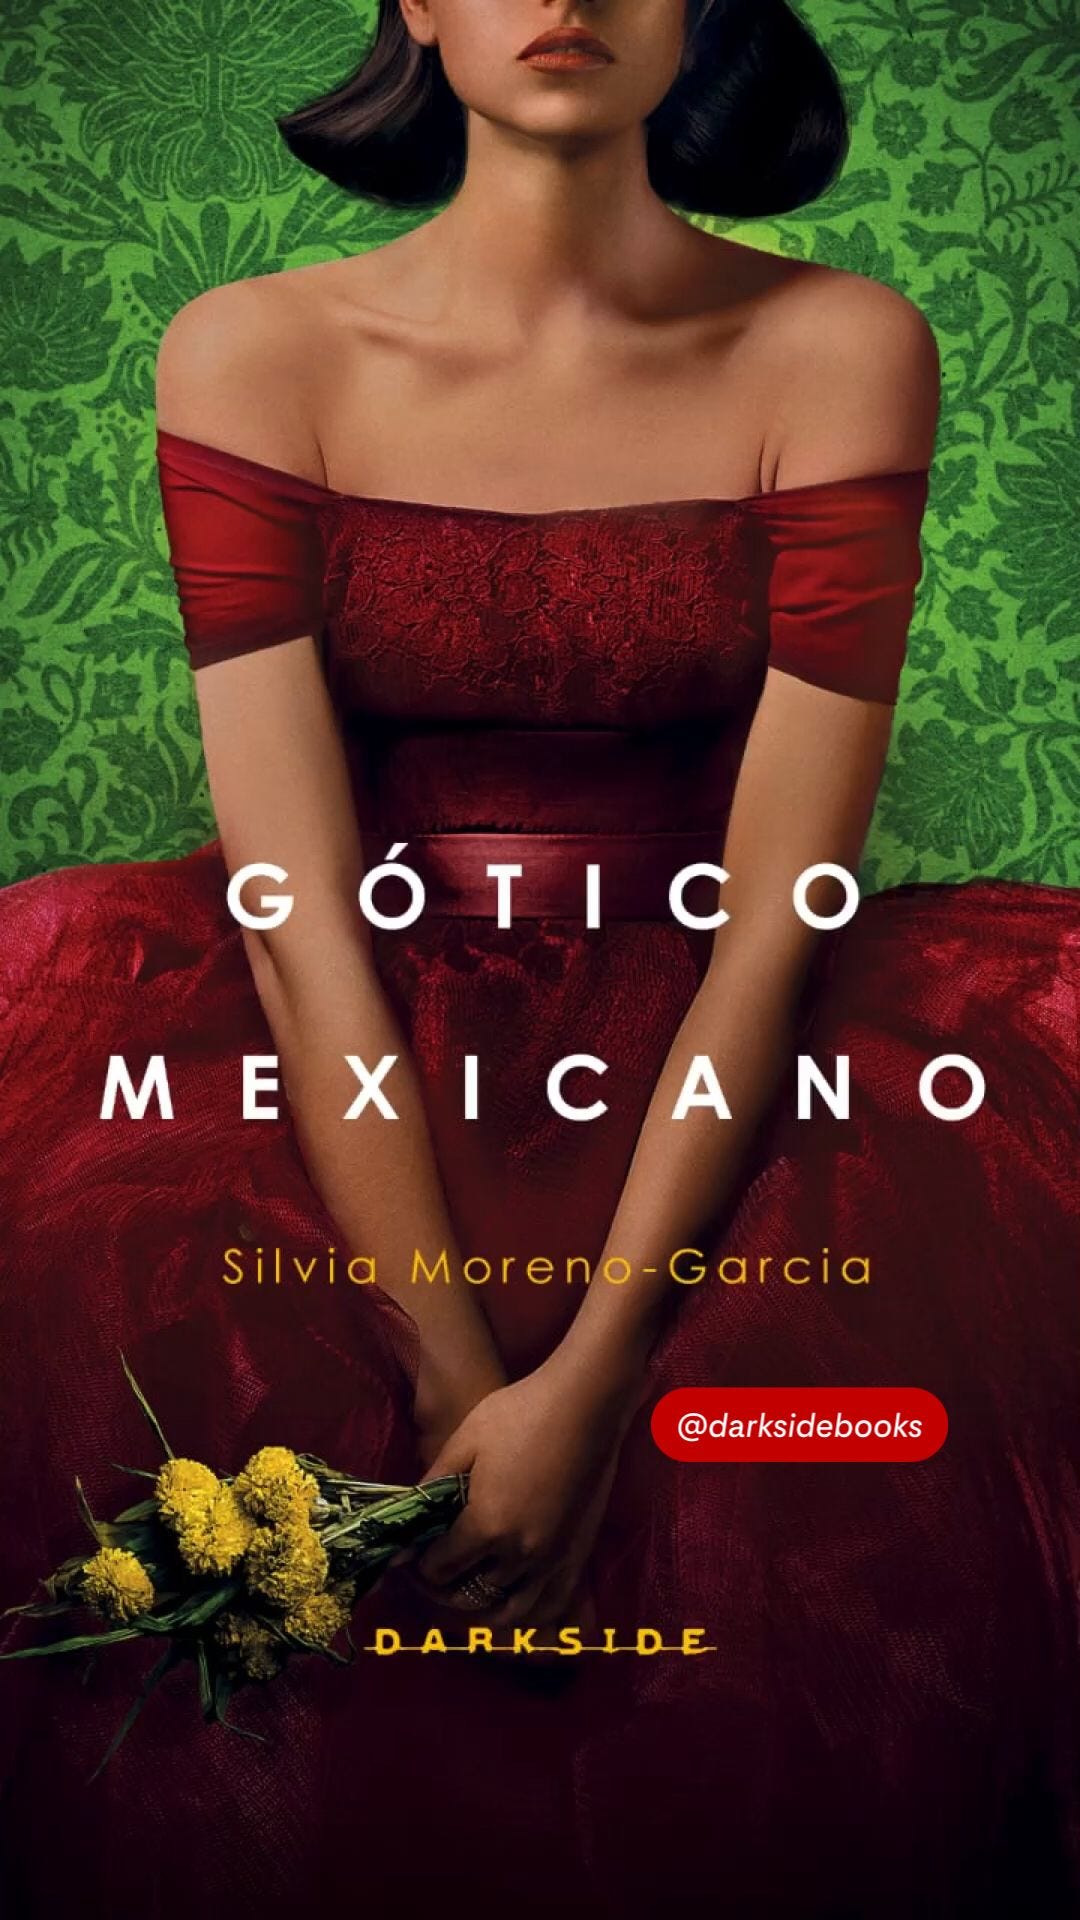 Livro Gótico Mexicano - DarksideBooks | Sugestões de livros, Recomendações  de livros, Amantes de livros